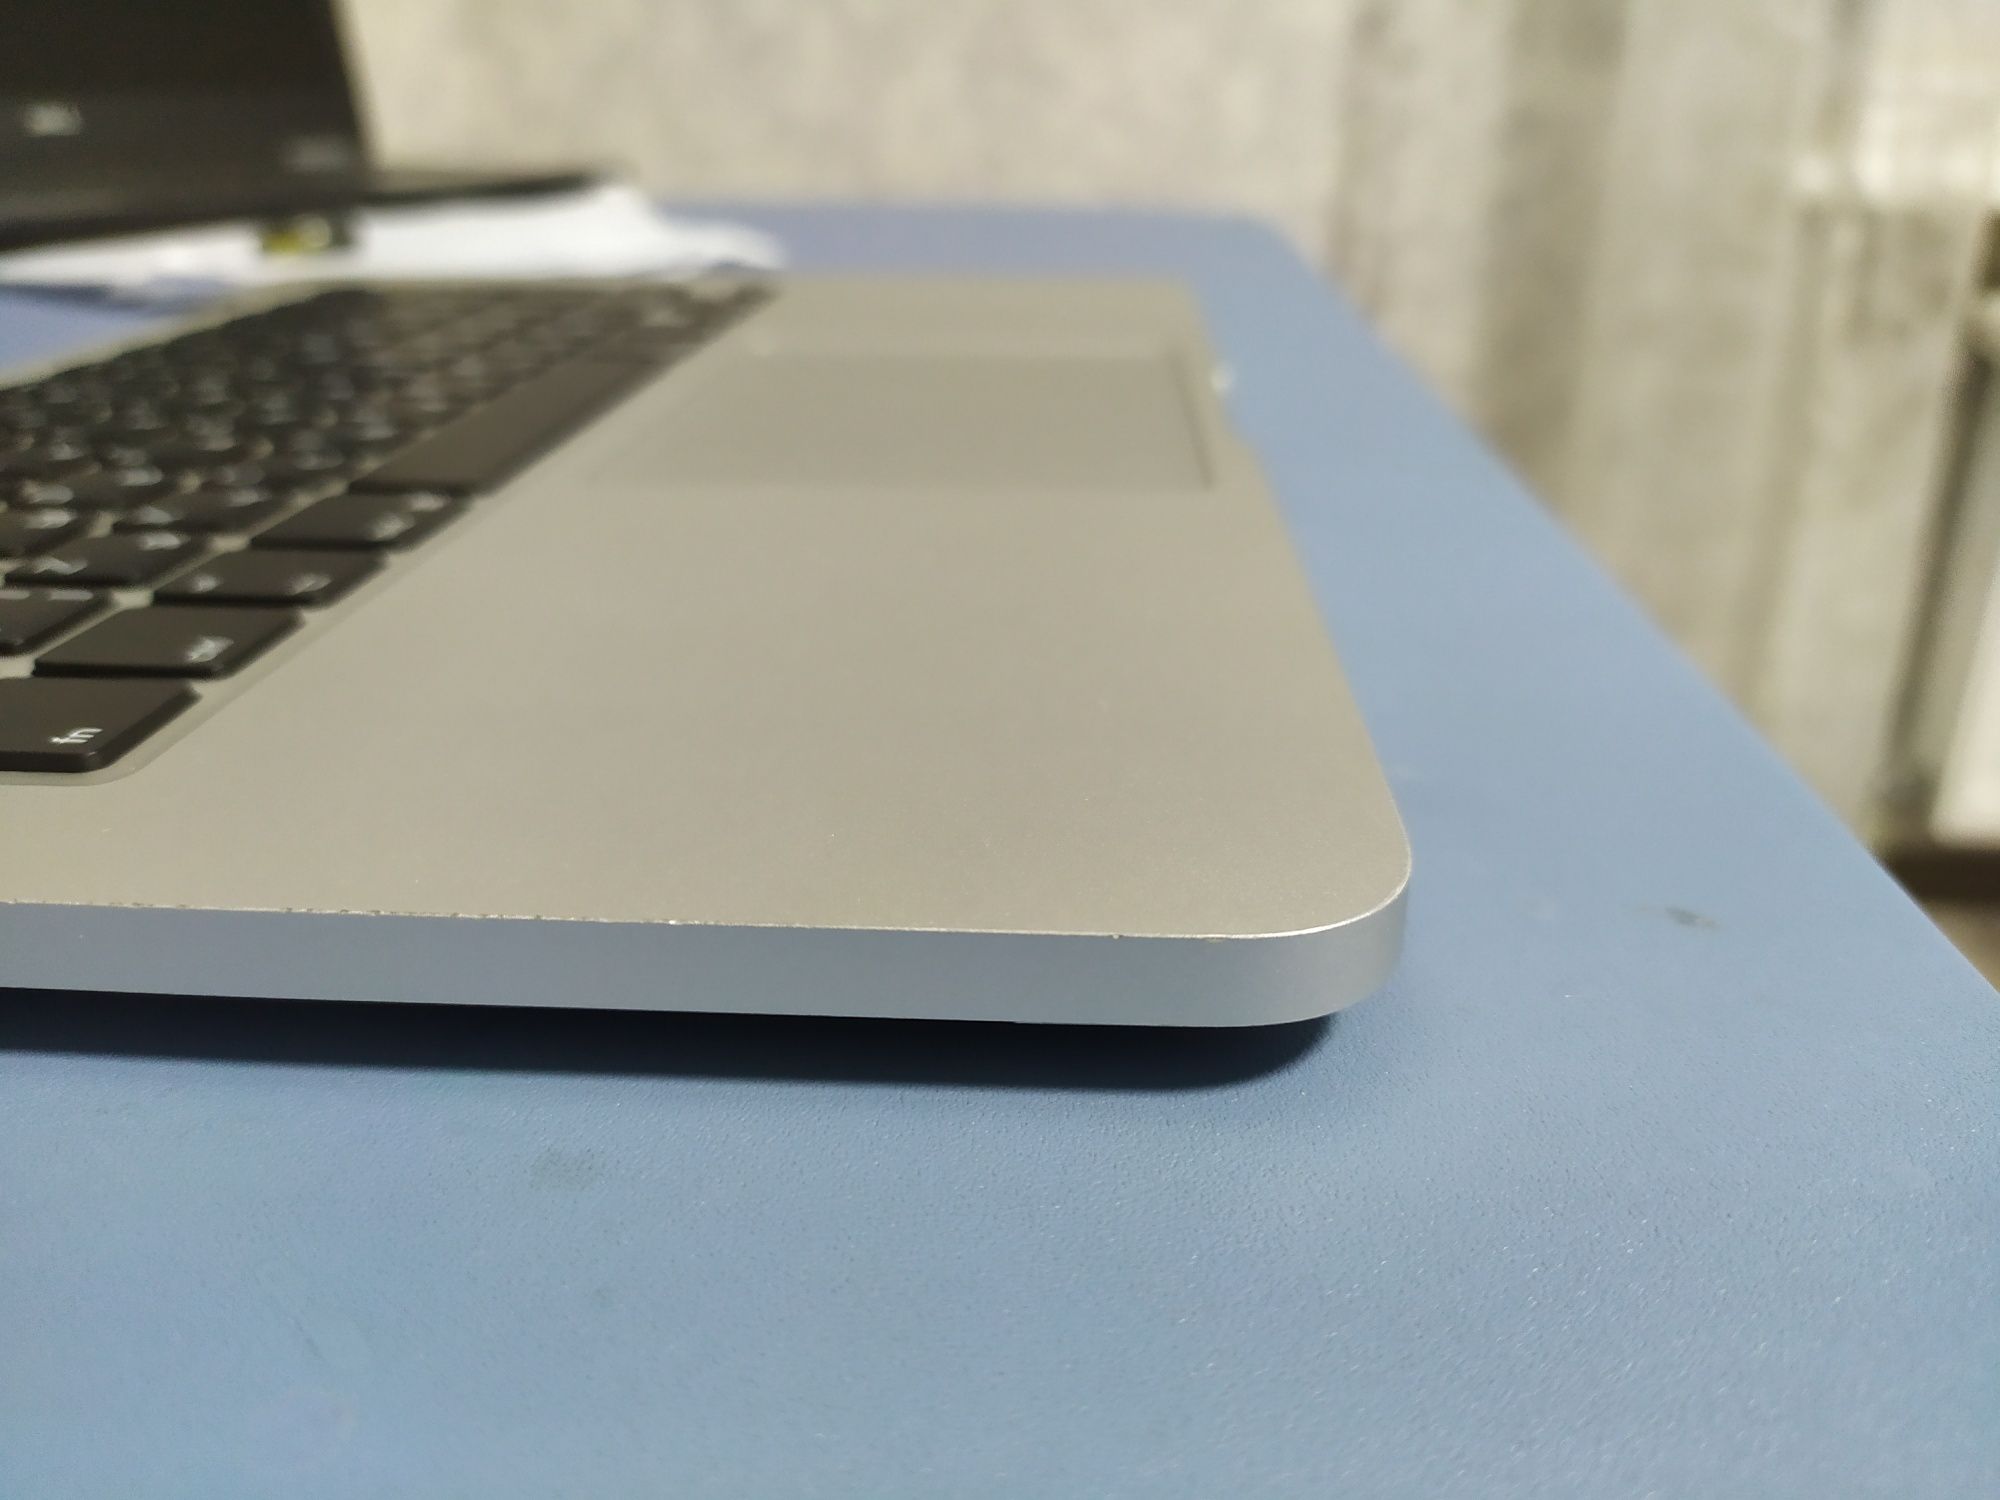 MacBook a 1502 2015